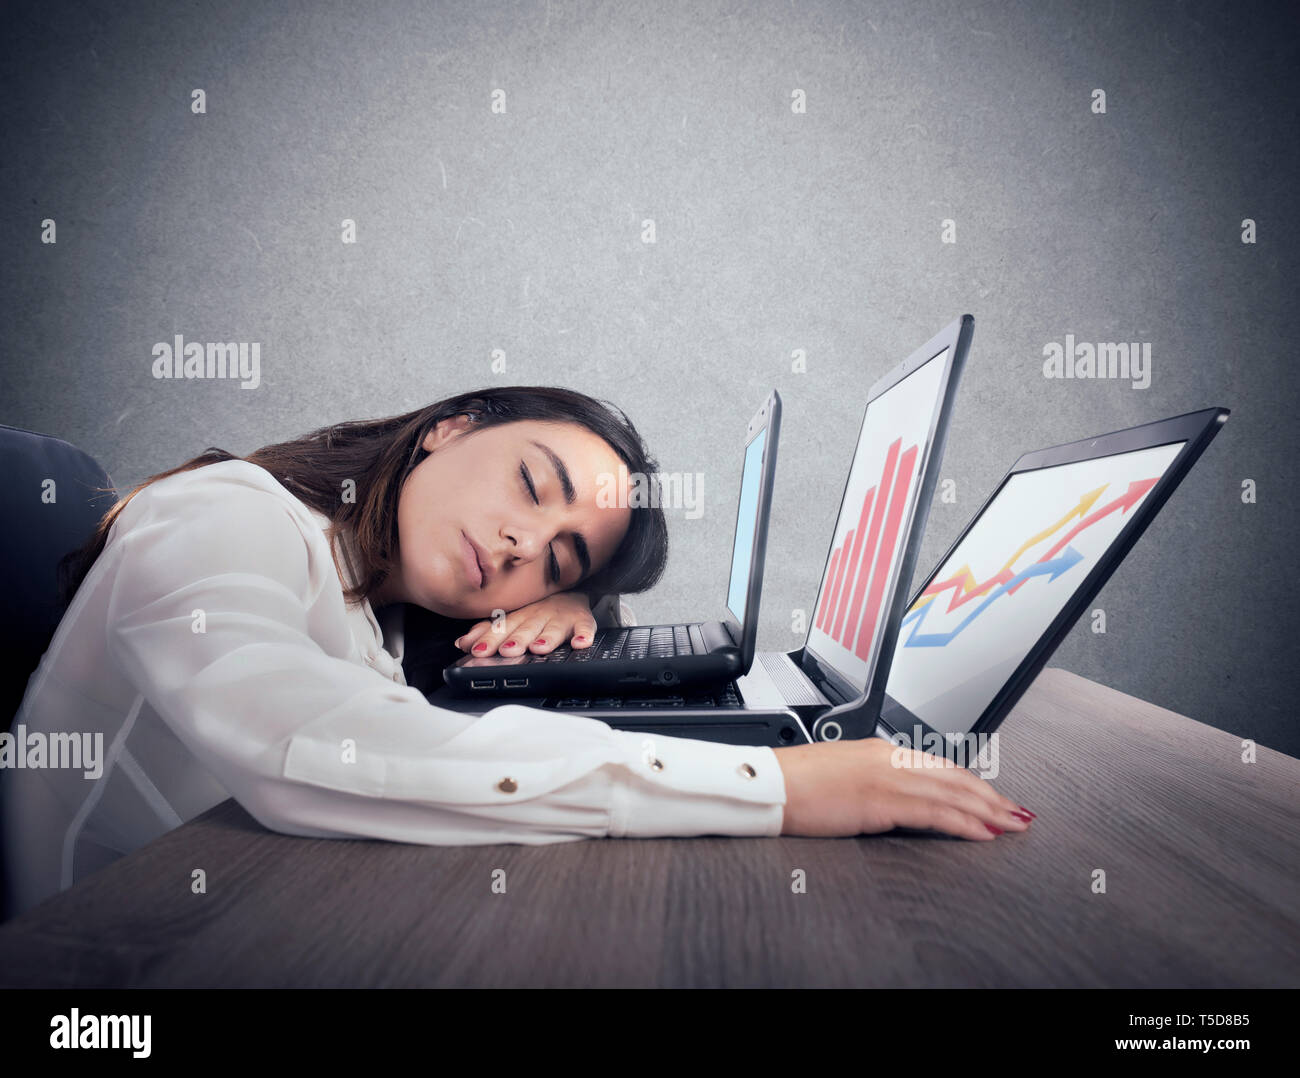 Weibliche Arbeitnehmer einschläft, während gleichzeitig arbeiten an drei Laptops Stockfoto